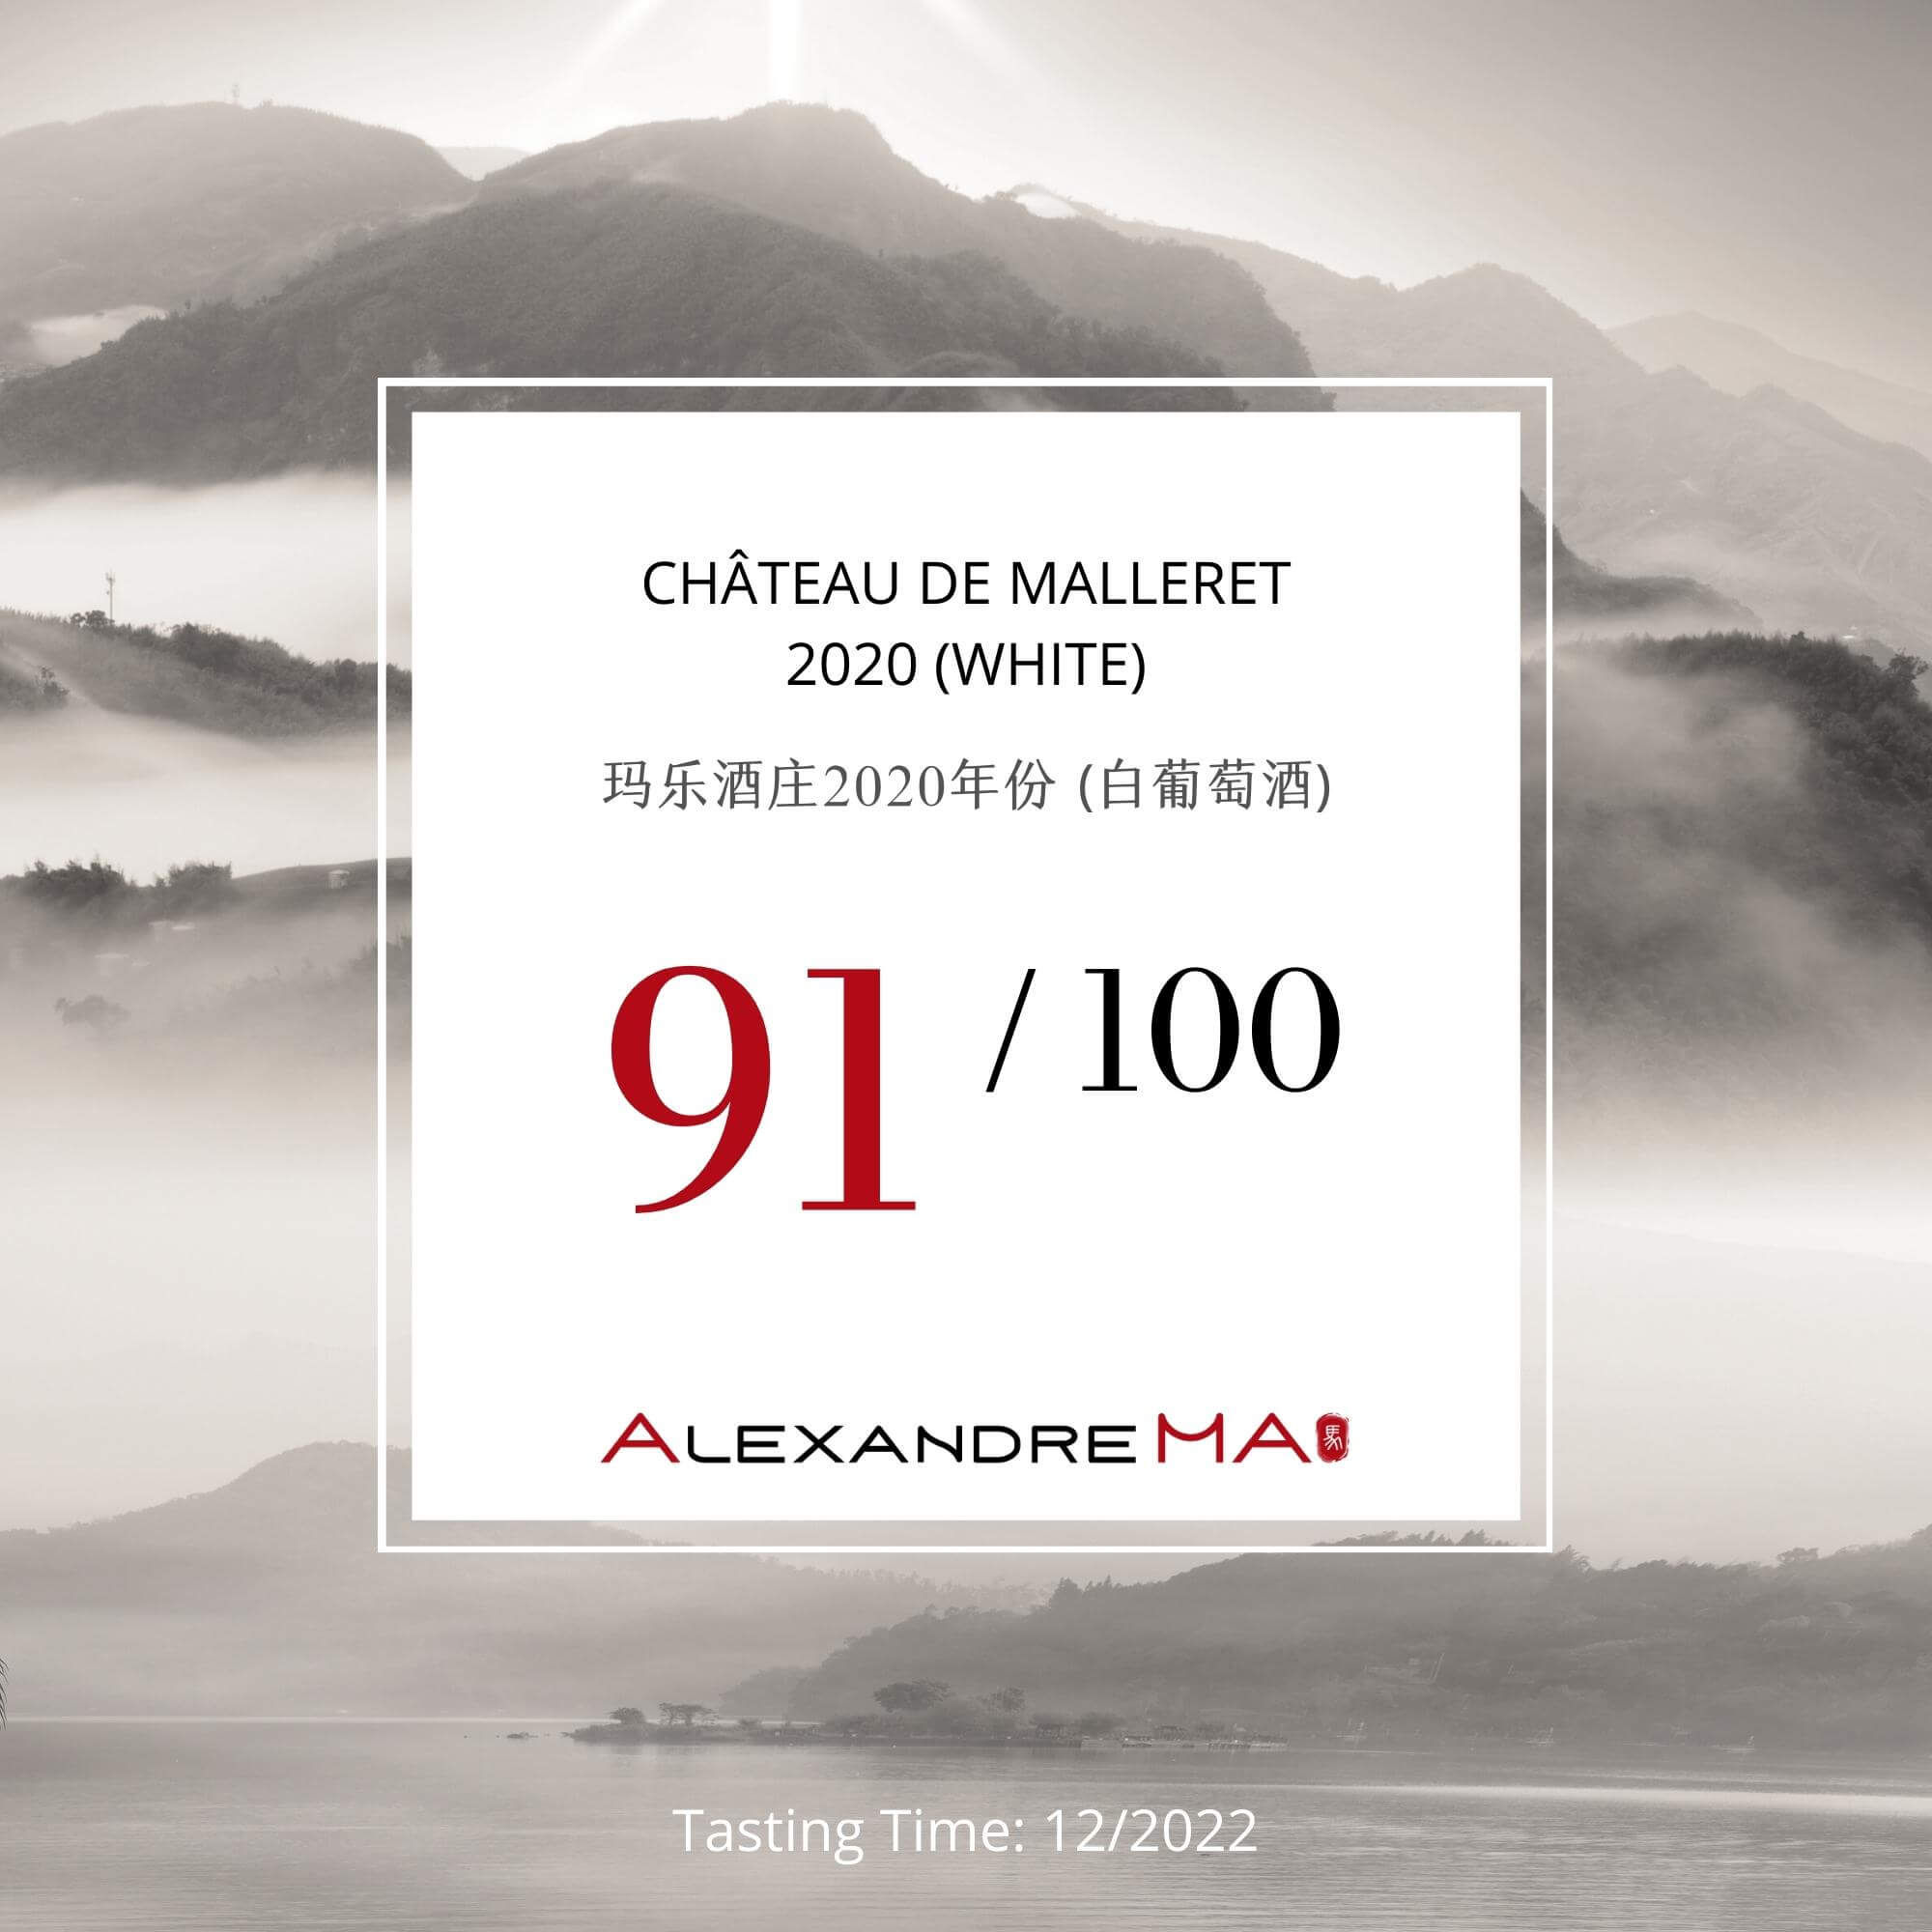 Château de Malleret 2020-White - Alexandre MA